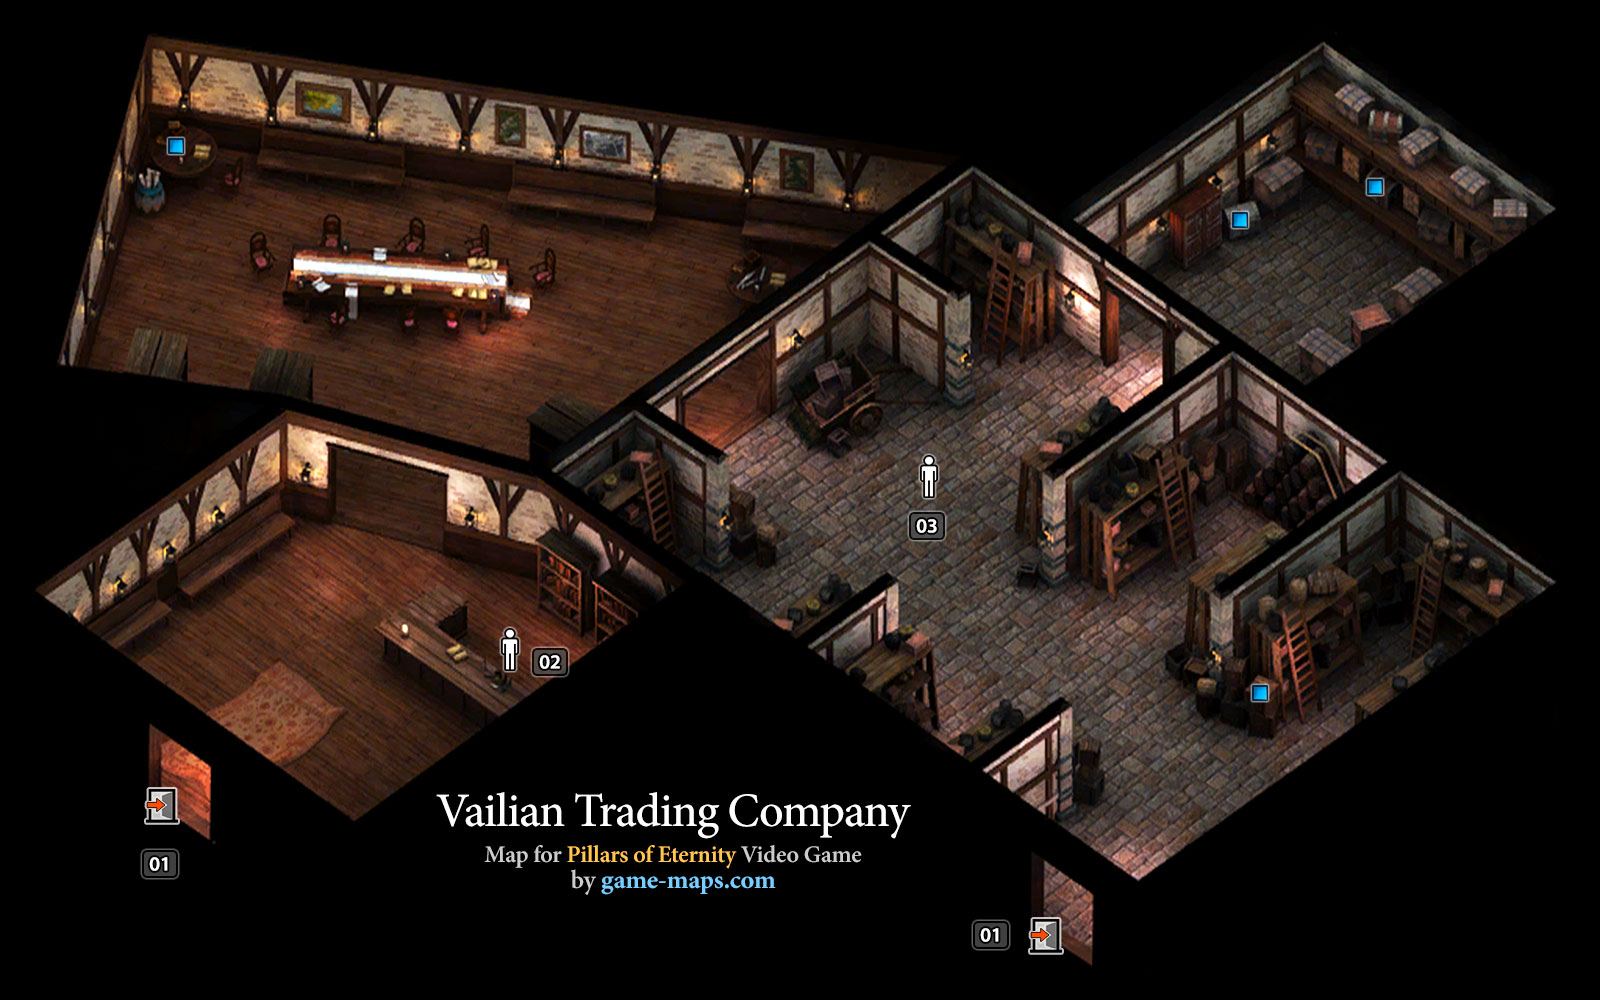 Vailian Trading Company Map - Defiance Bay - Pillars of Eternity